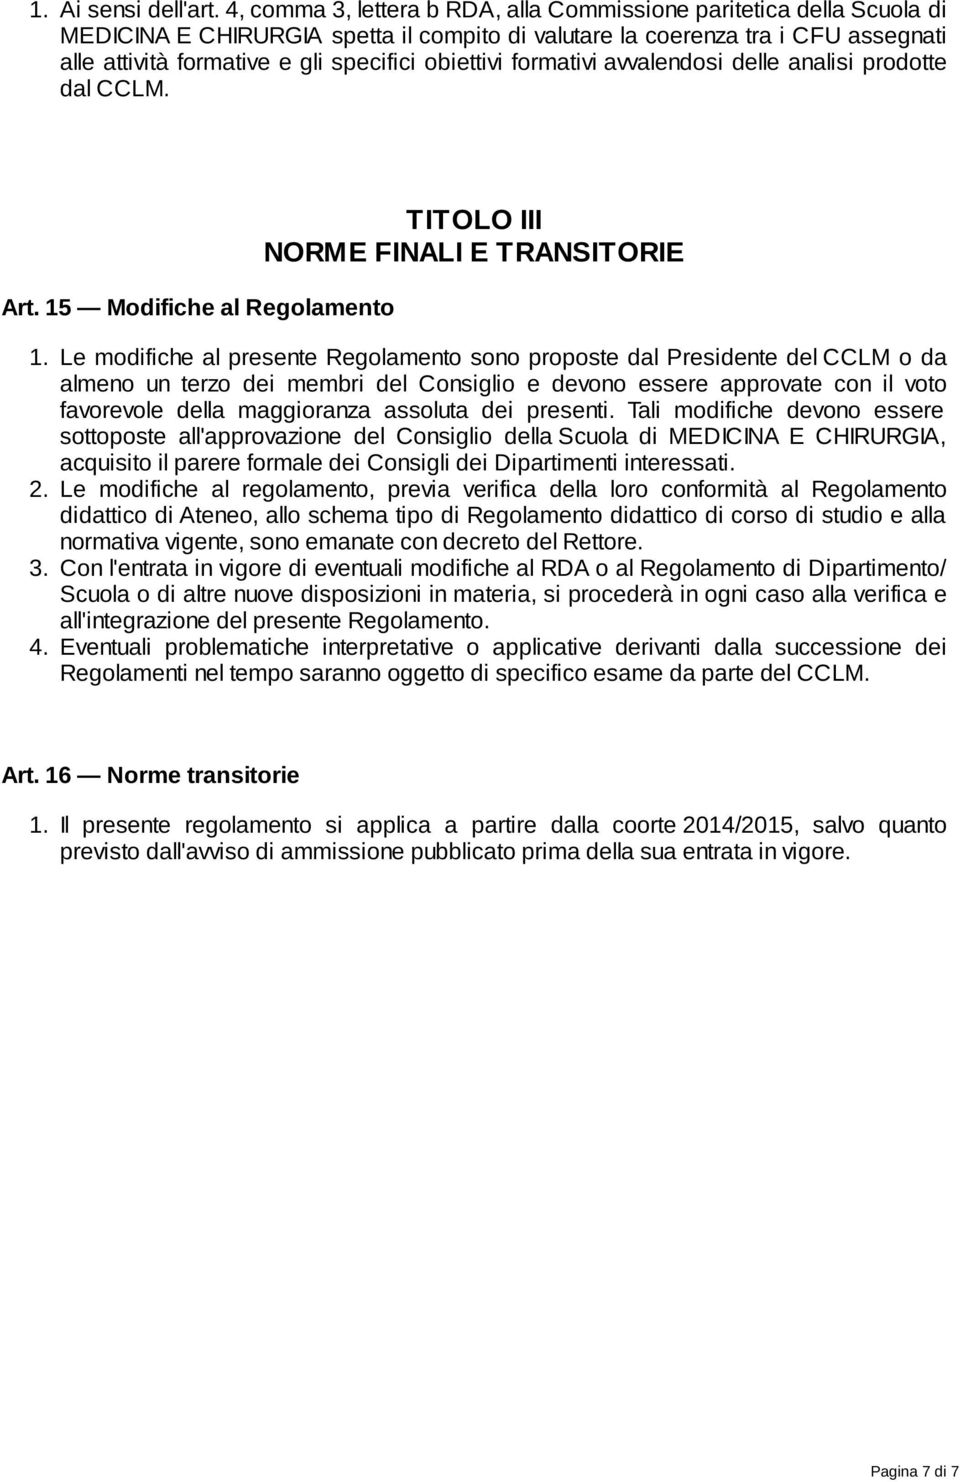 obiettivi formativi avvalendosi delle analisi prodotte dal CCLM. Art. 15 Modifiche al Regolamento TITOLO III NORME FINALI E TRANSITORIE 1.